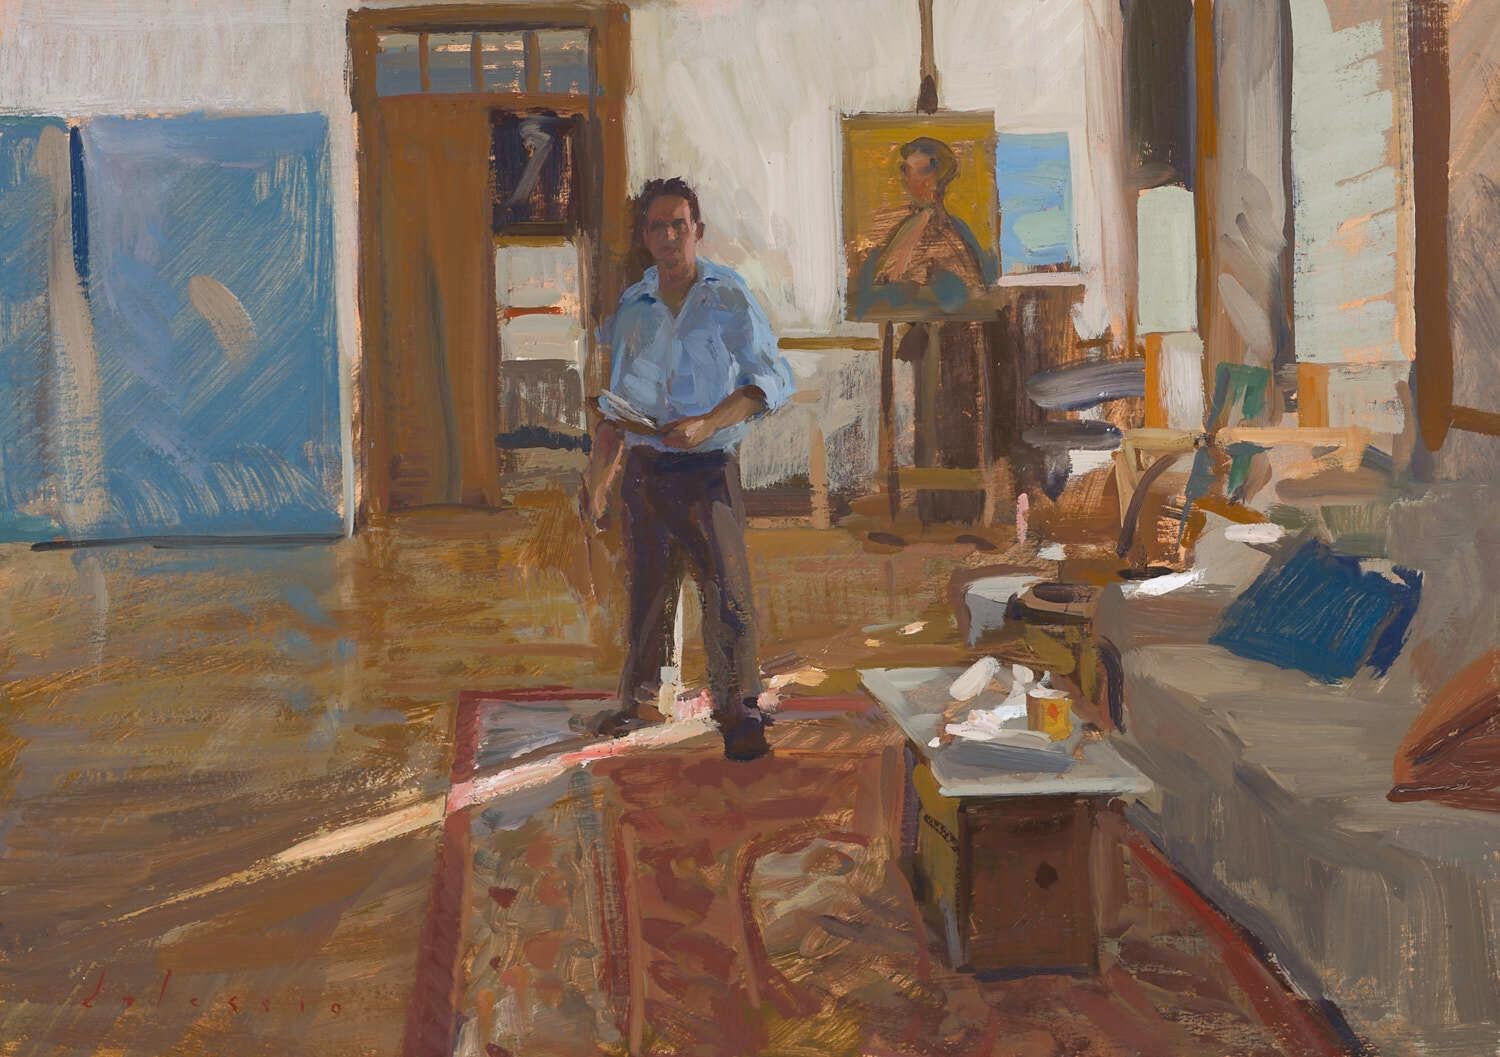 Marc Dalessio Figurative Painting – "Lockdown Self-Portrait" zeitgenössisches realistisches Porträt des Künstlers in seinem Studio